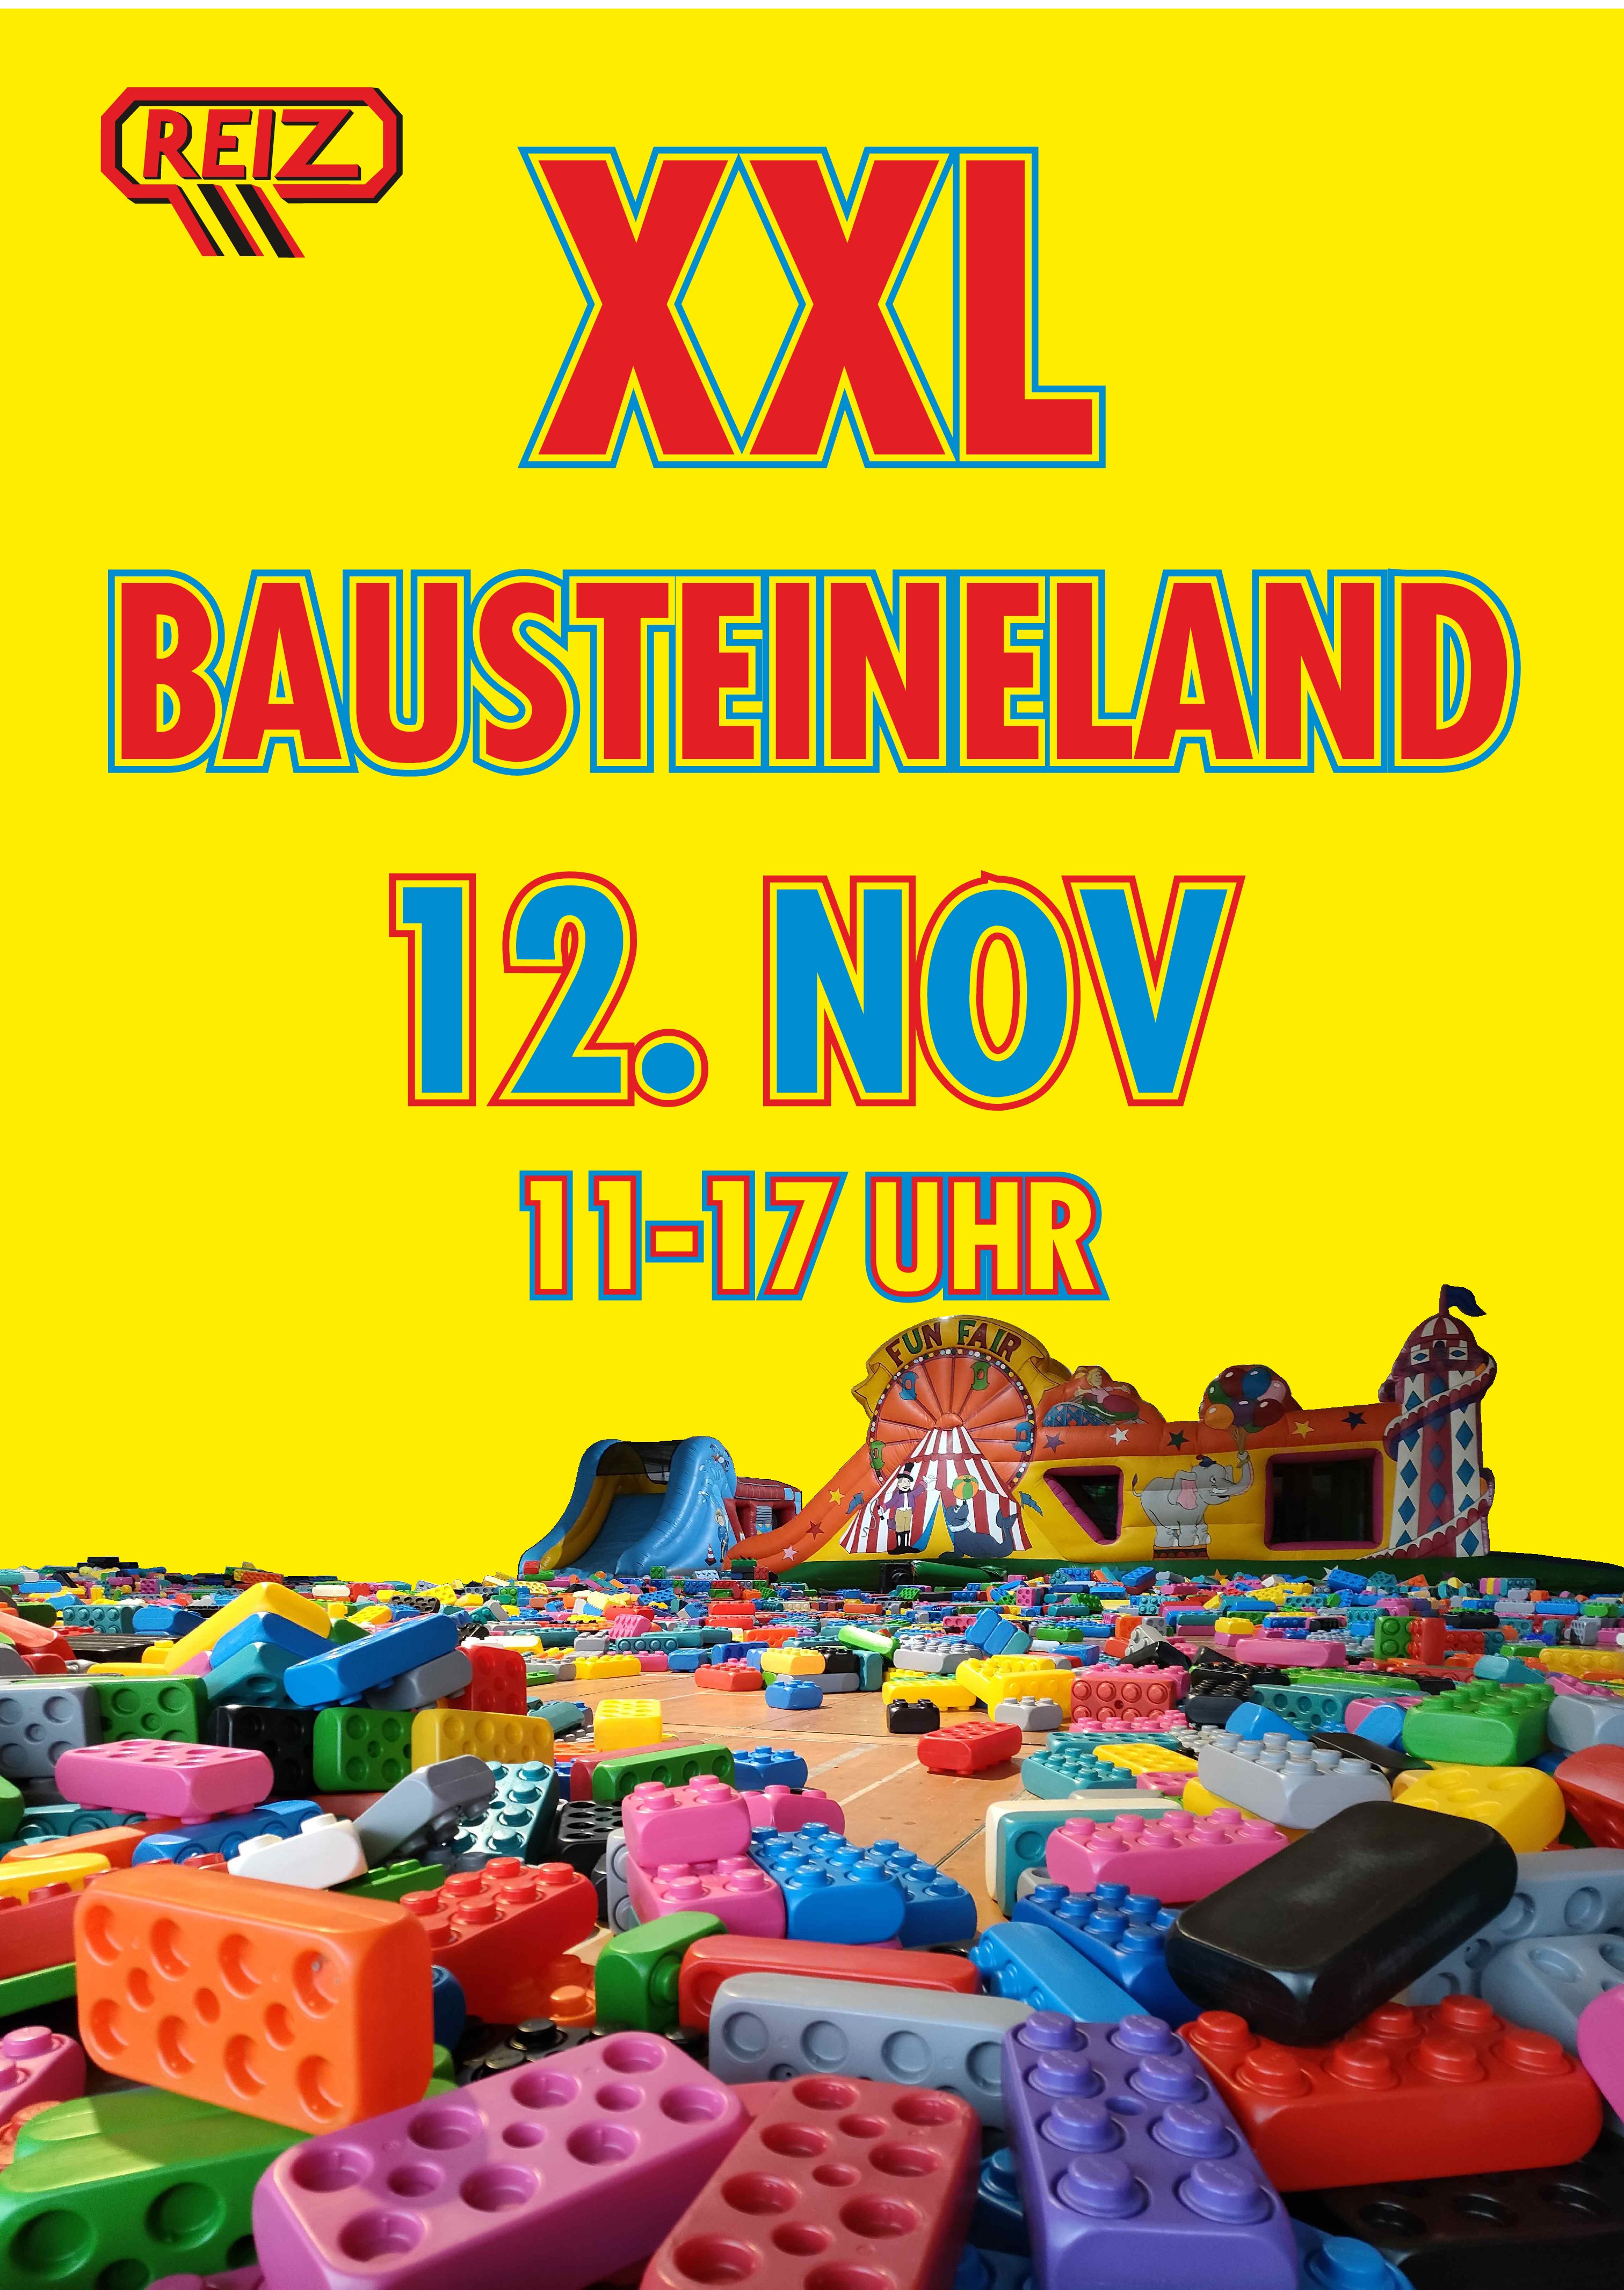 XXL Bausteineland